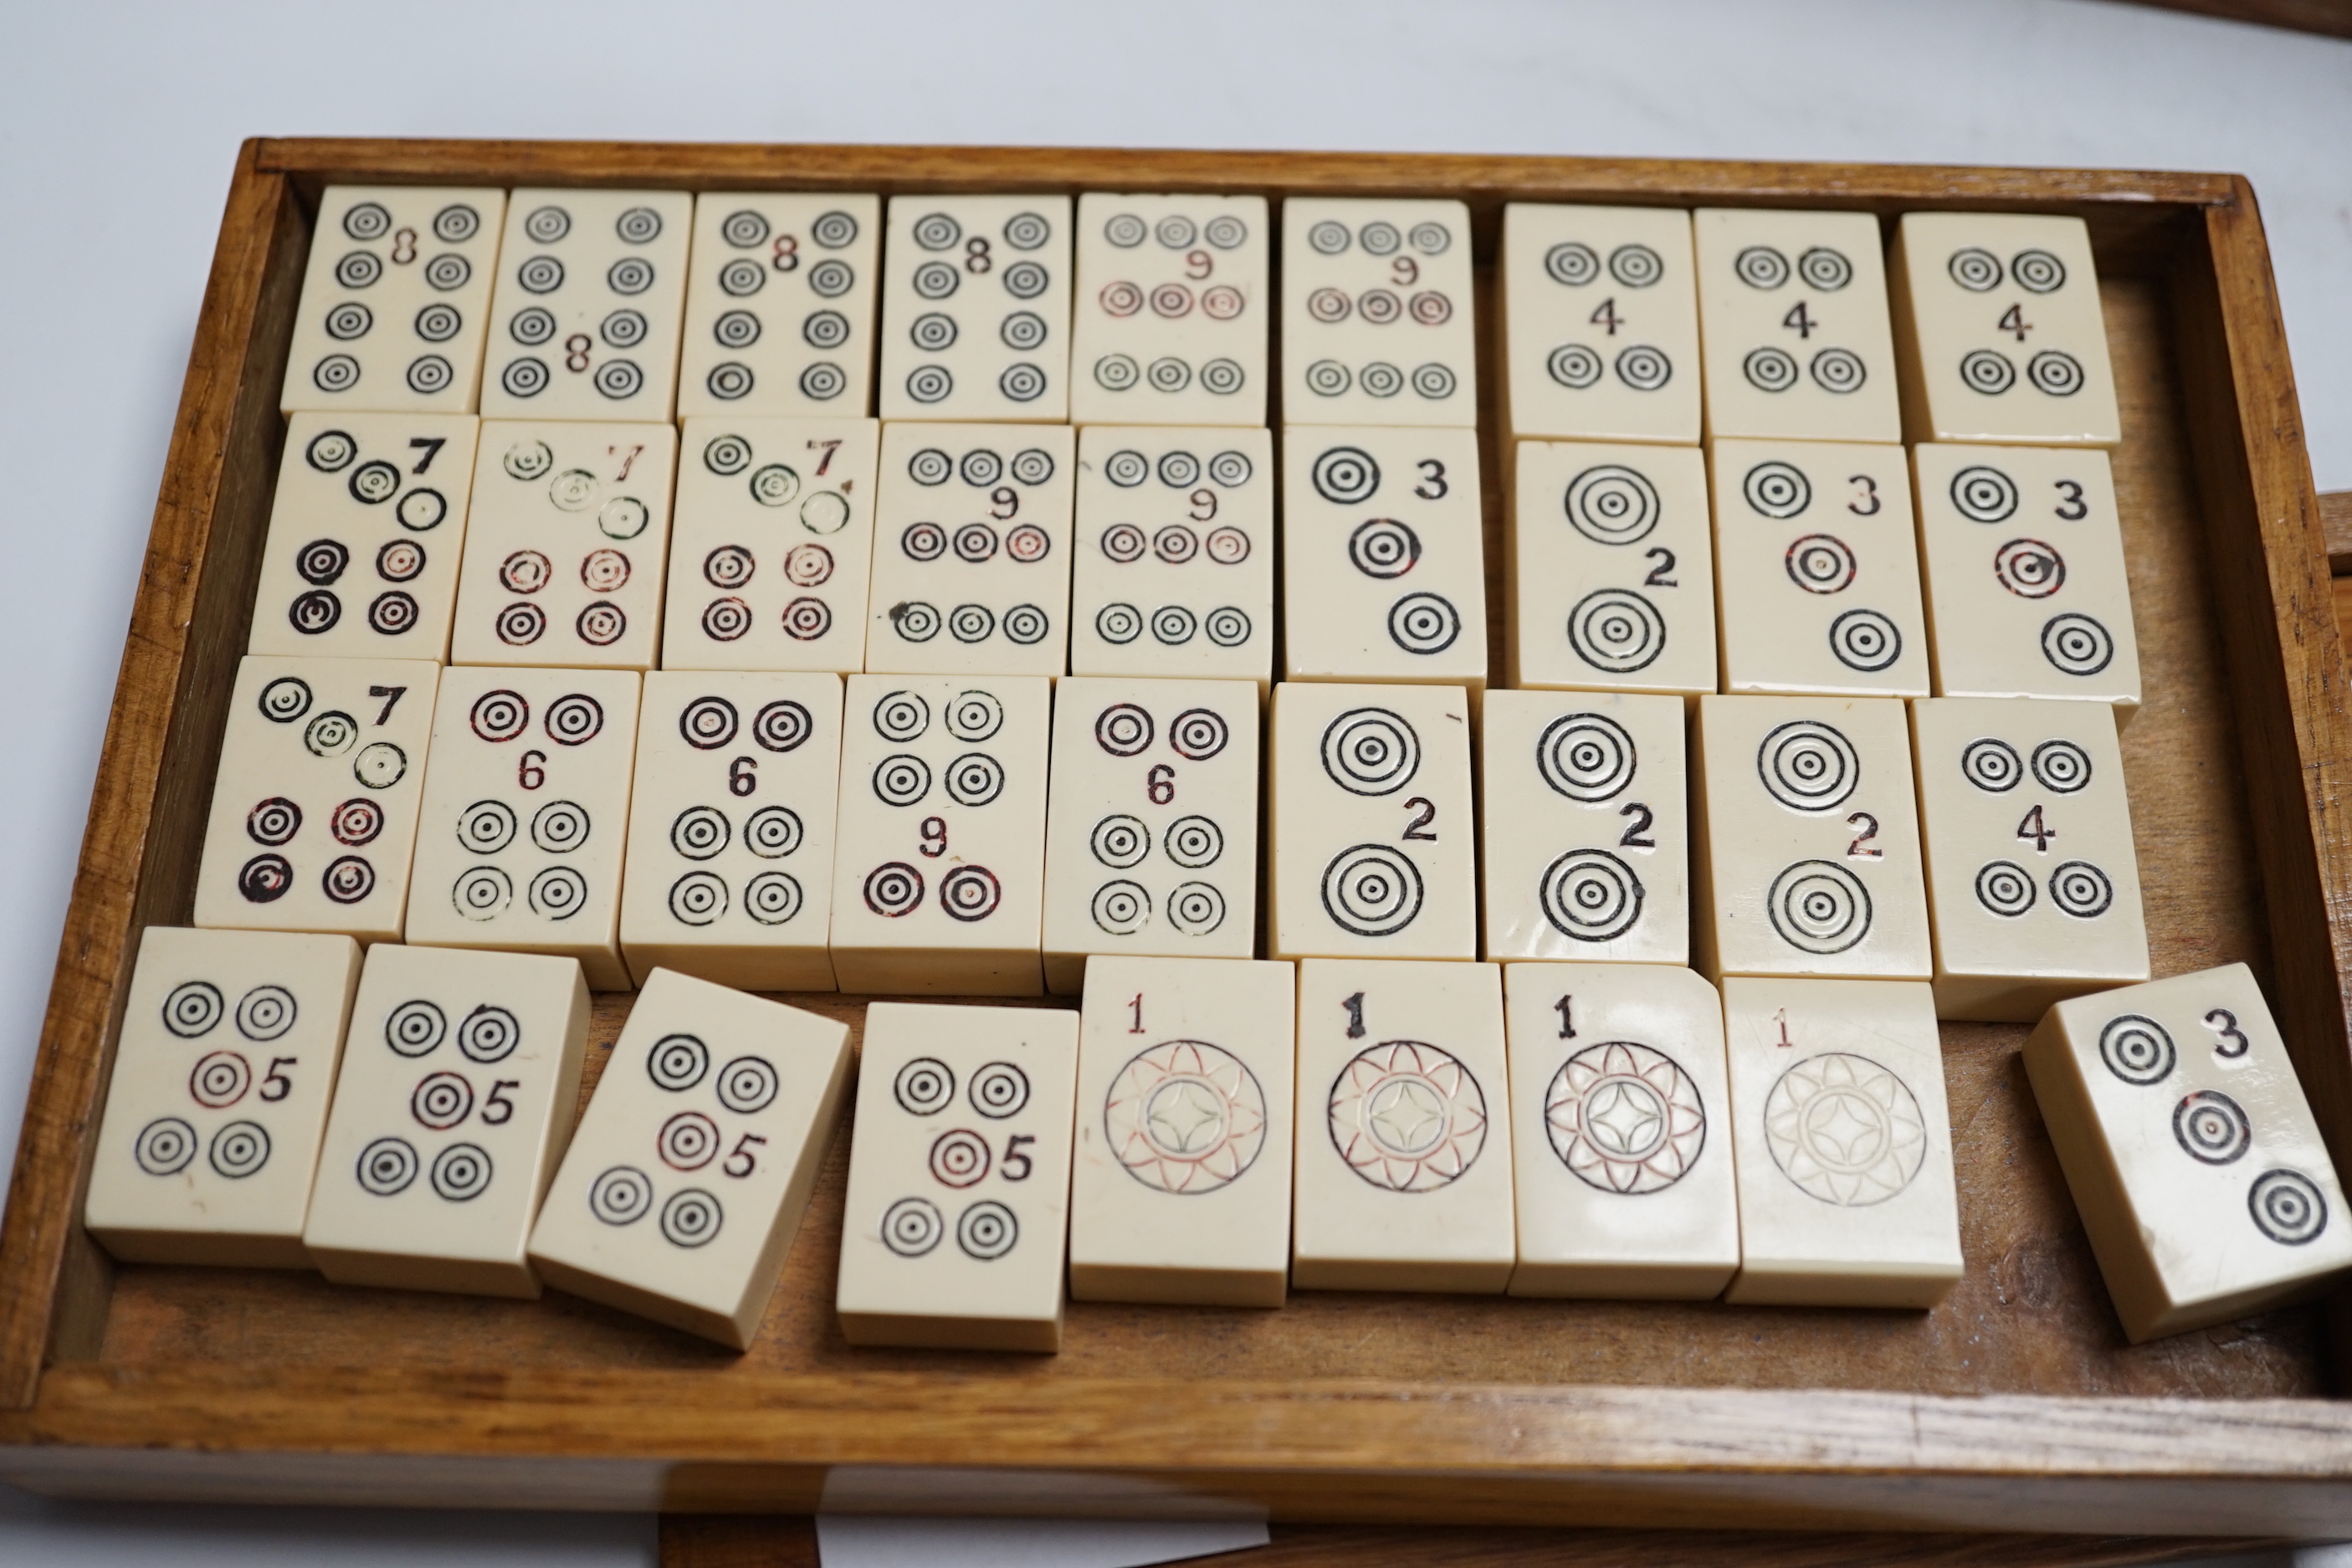 A Chinese mahjong set